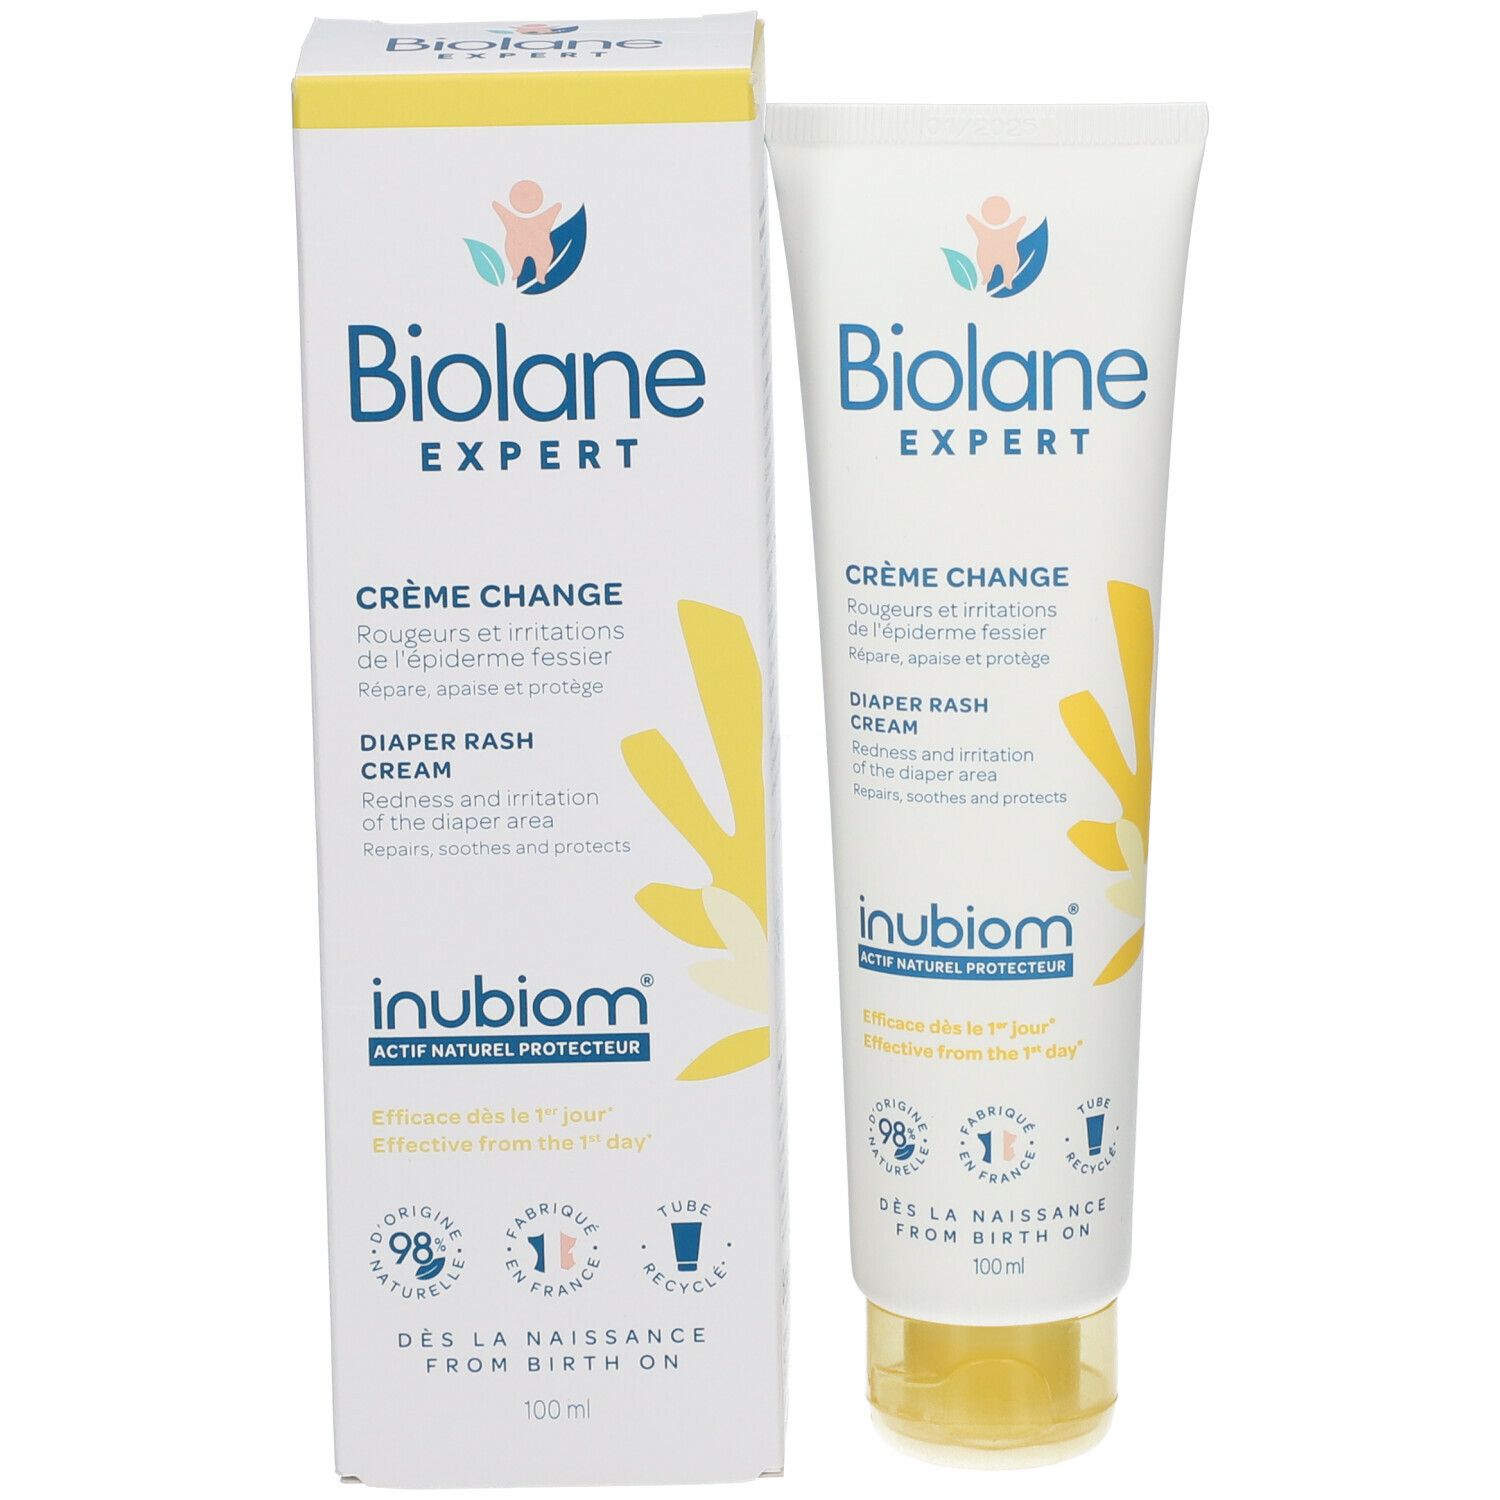 Biolane Experte crème change 100ml - 58746 - Crème pour